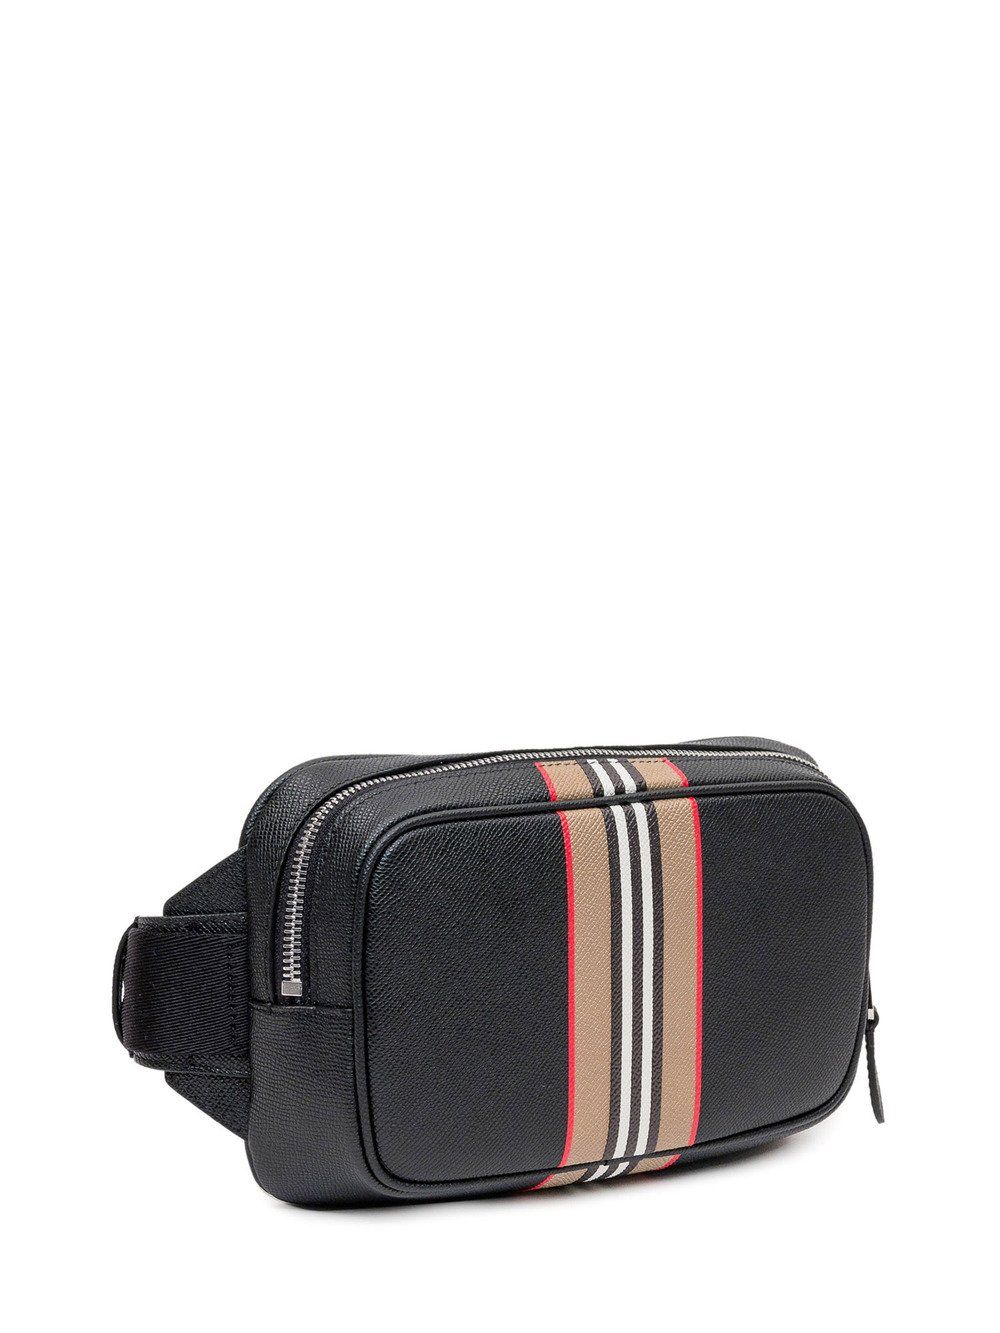 Elegant Black Calf Leather Belt Bag